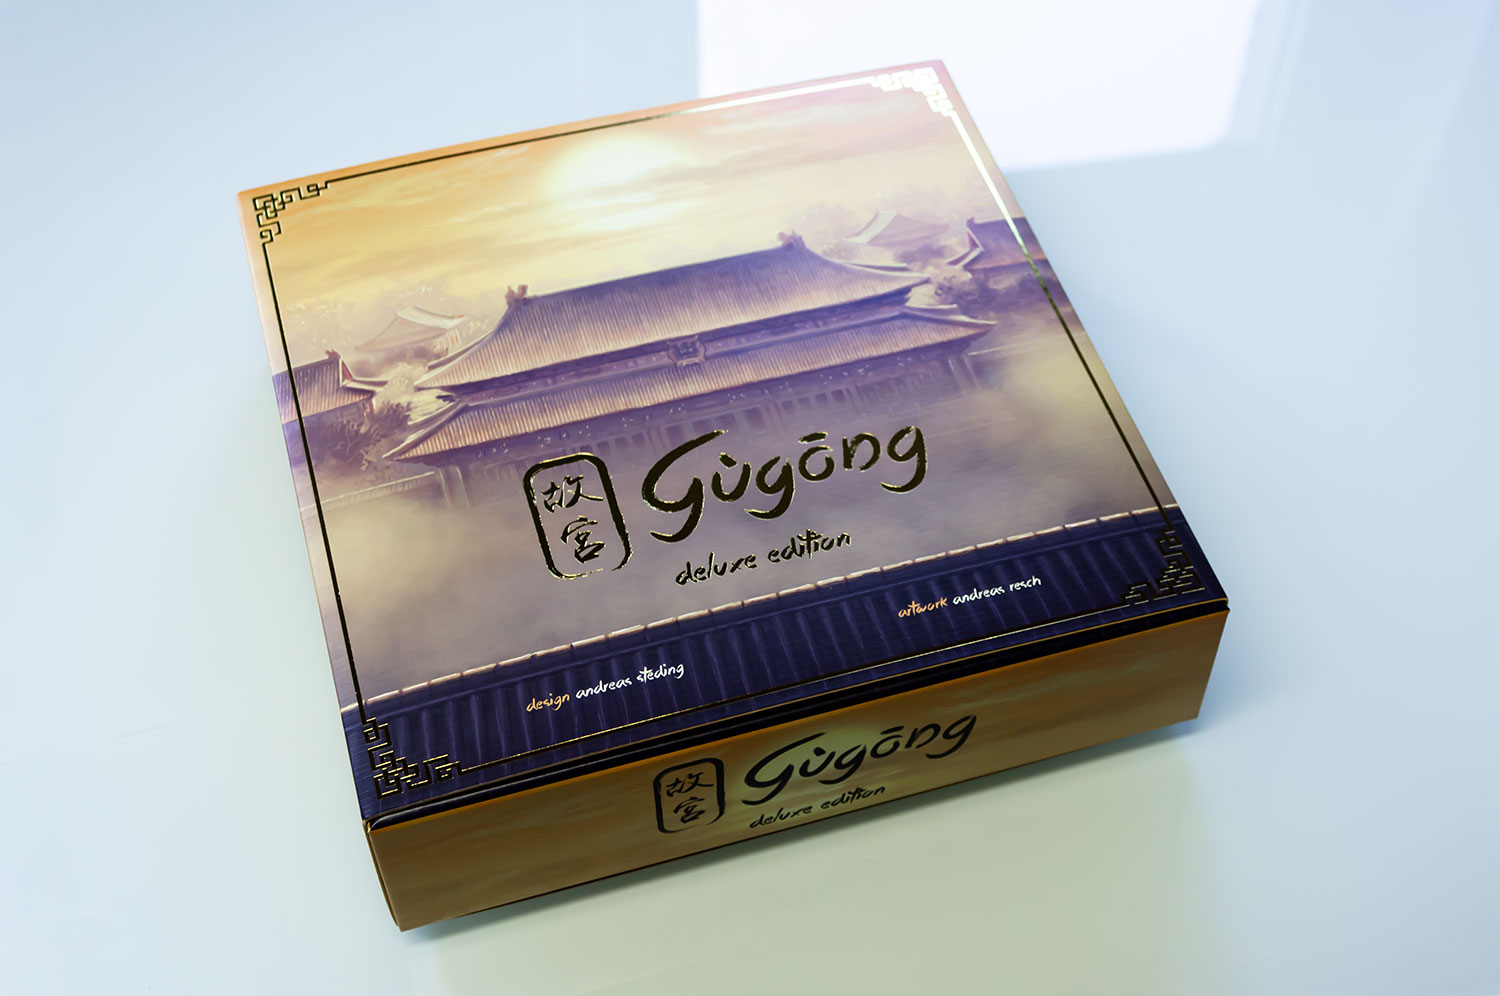 Gùgōng - Kickstarter Version ausgeliefert - Bilder vom Spiel